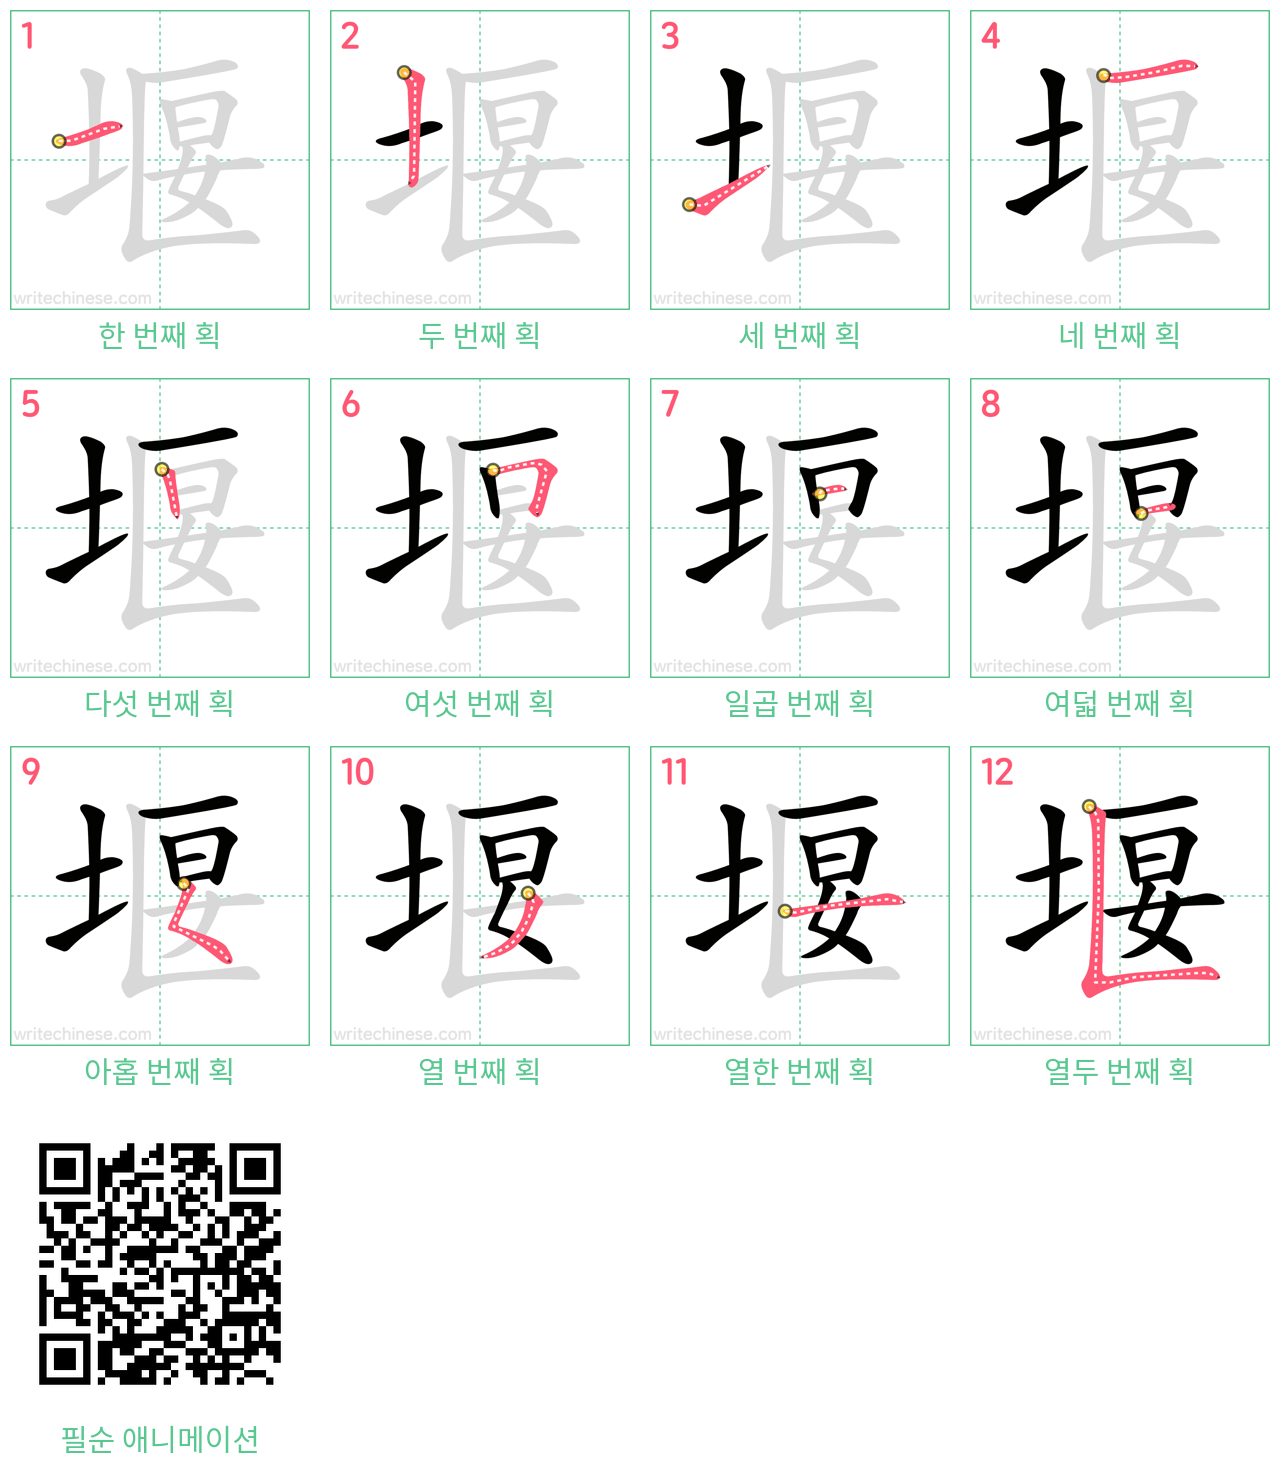 堰 step-by-step stroke order diagrams